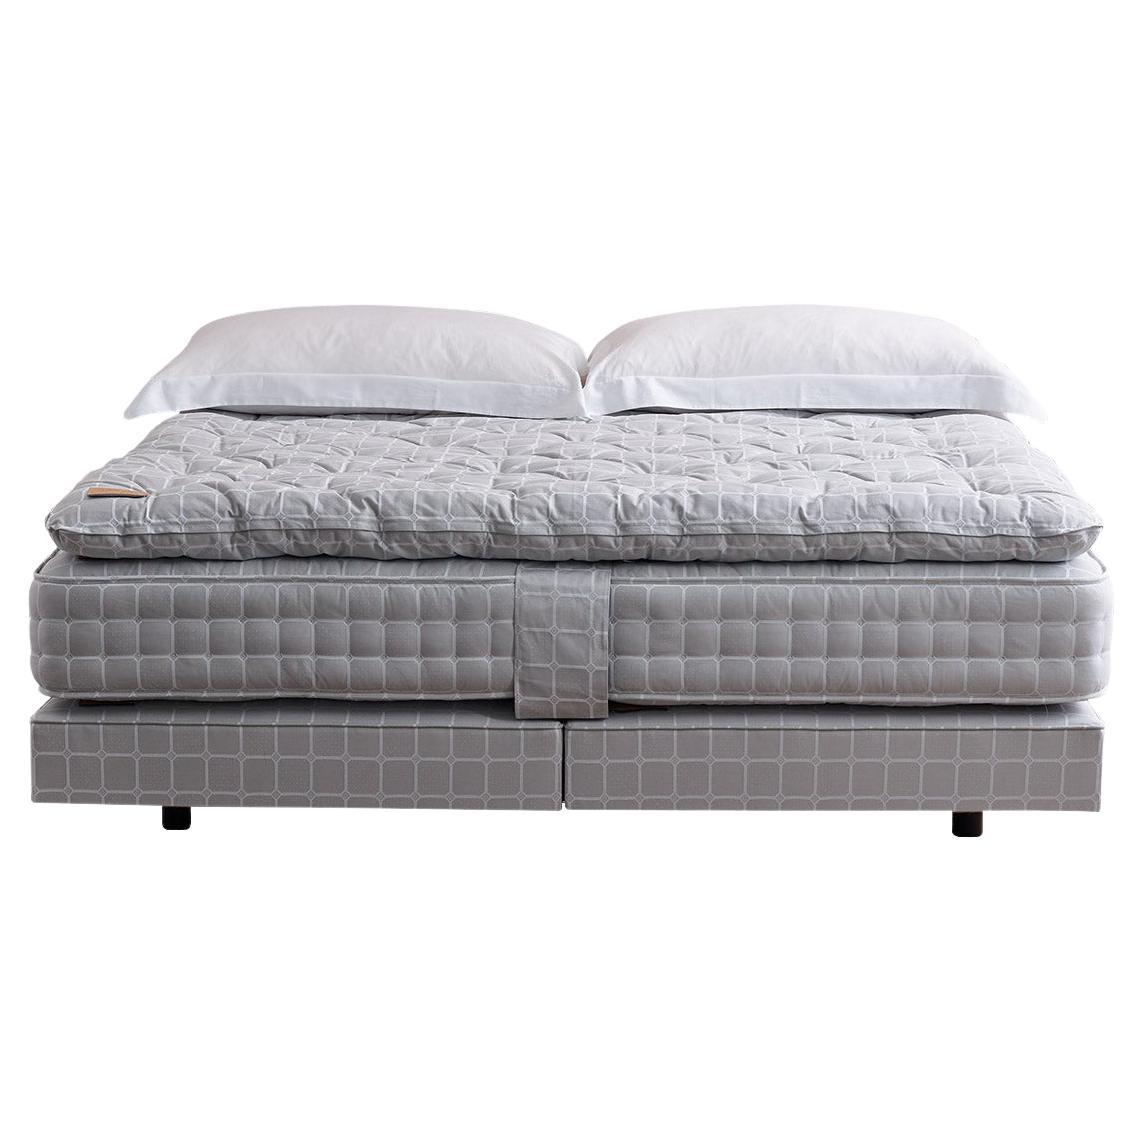 Savoir Nº4v Vegan Bed Set, the Reformer, Handmade to Order, US Queen Size